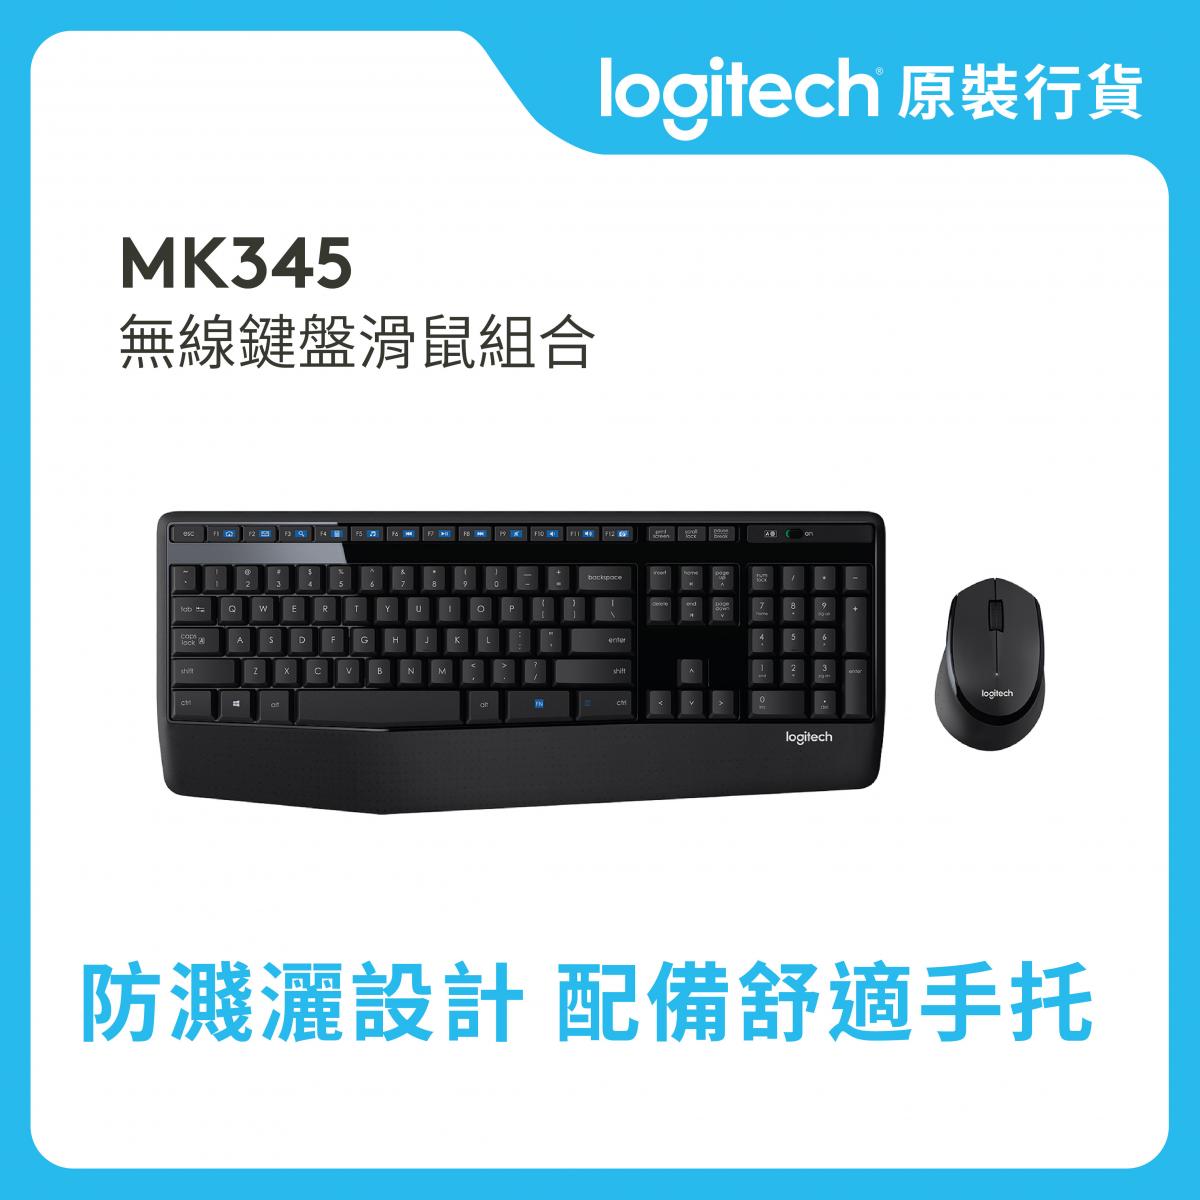 MK345 無線鍵盤與滑鼠組合